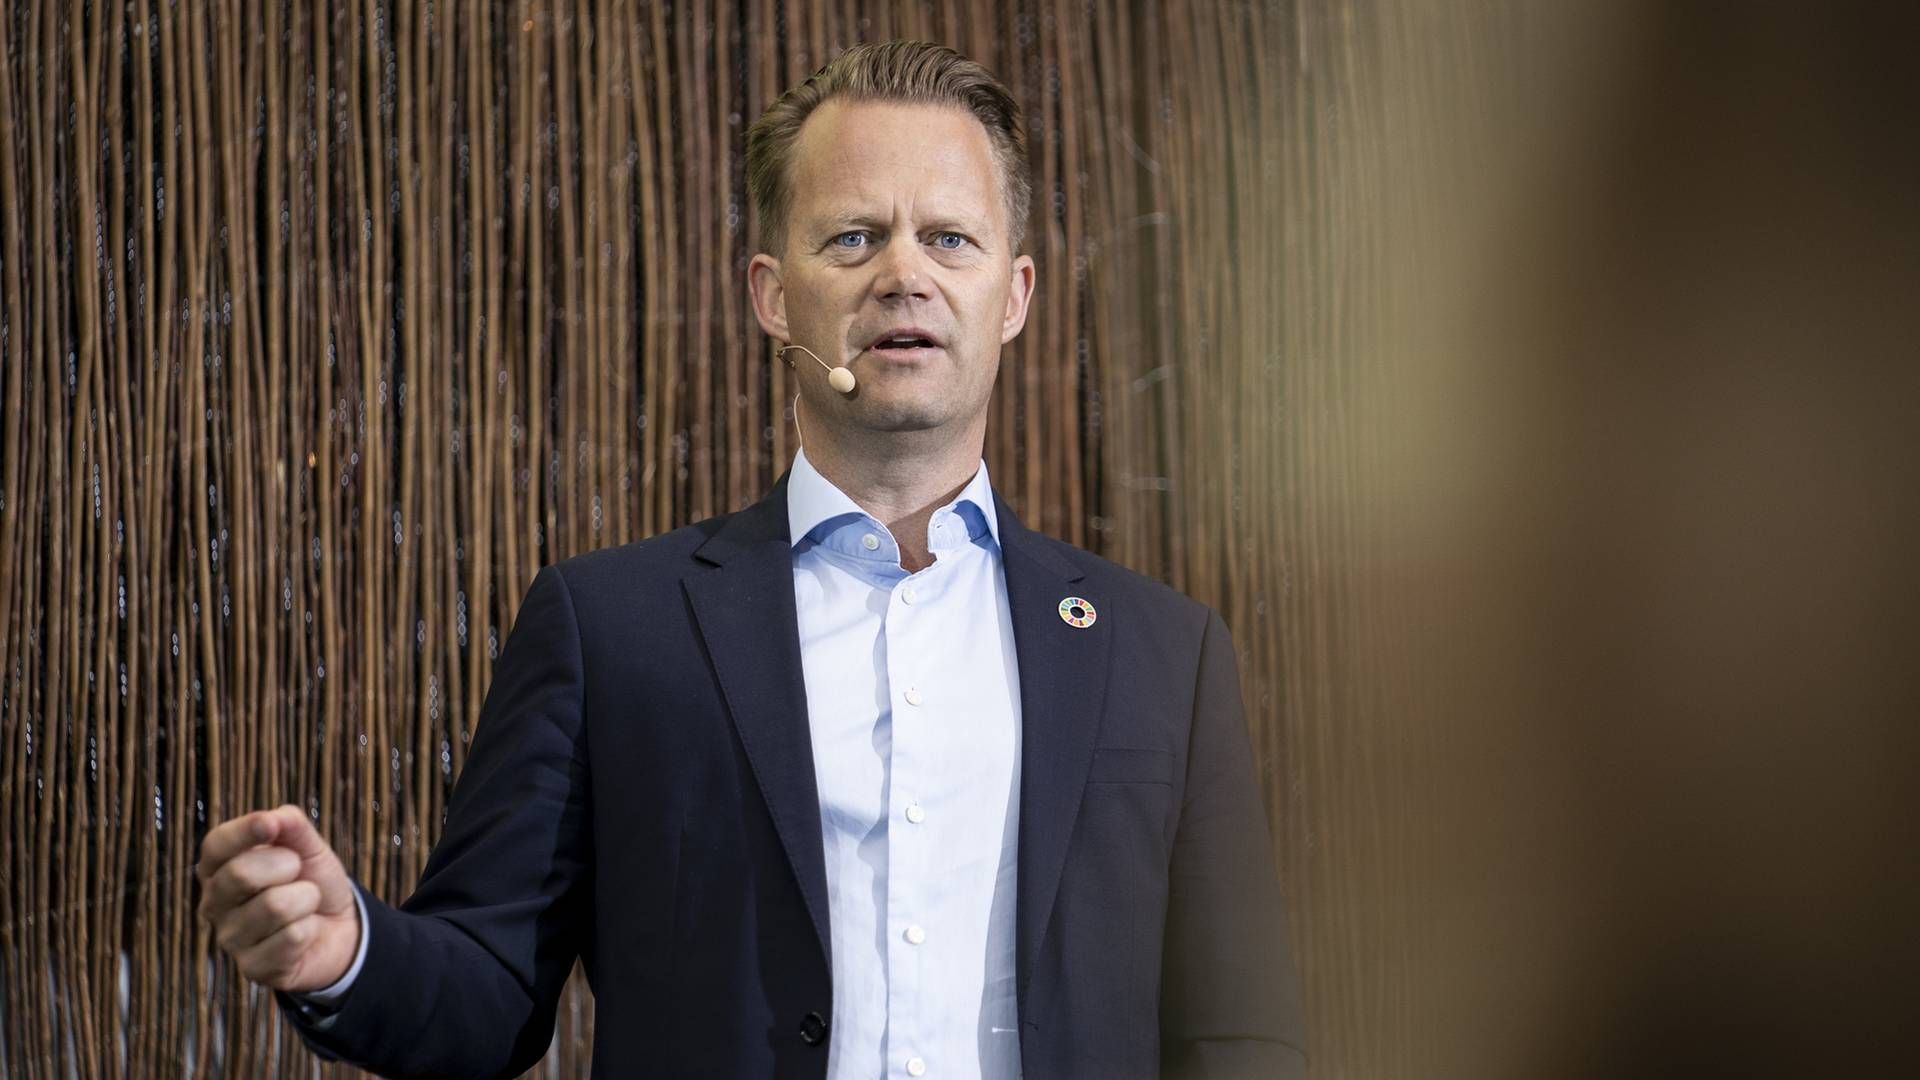 Udenrigsminister Jeppe Kofod har tilsyneladende fået noget at tænke over i forbindelse med ansættelsen af en ny techambassadør. | Foto: Niels Christian Vilmann//